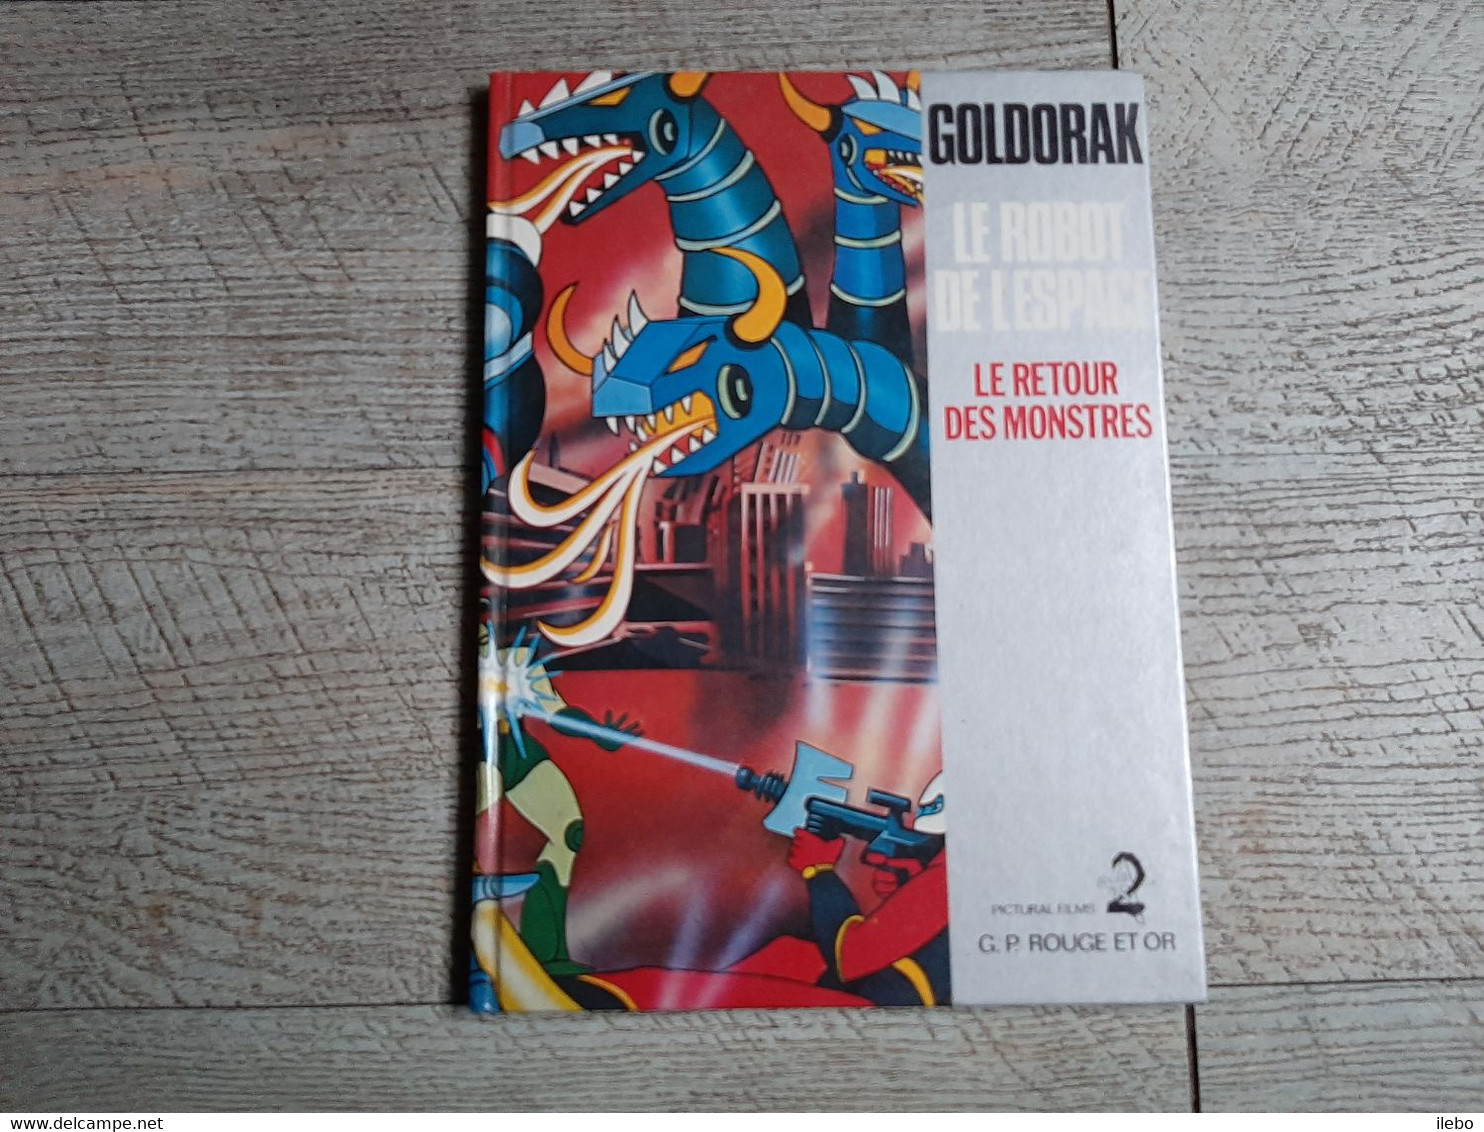 Goldorak Le Robot De L'espace Le Retour Des Monstres 1978 Pictural Films G P Rouge Et Or - Bibliotheque Rouge Et Or